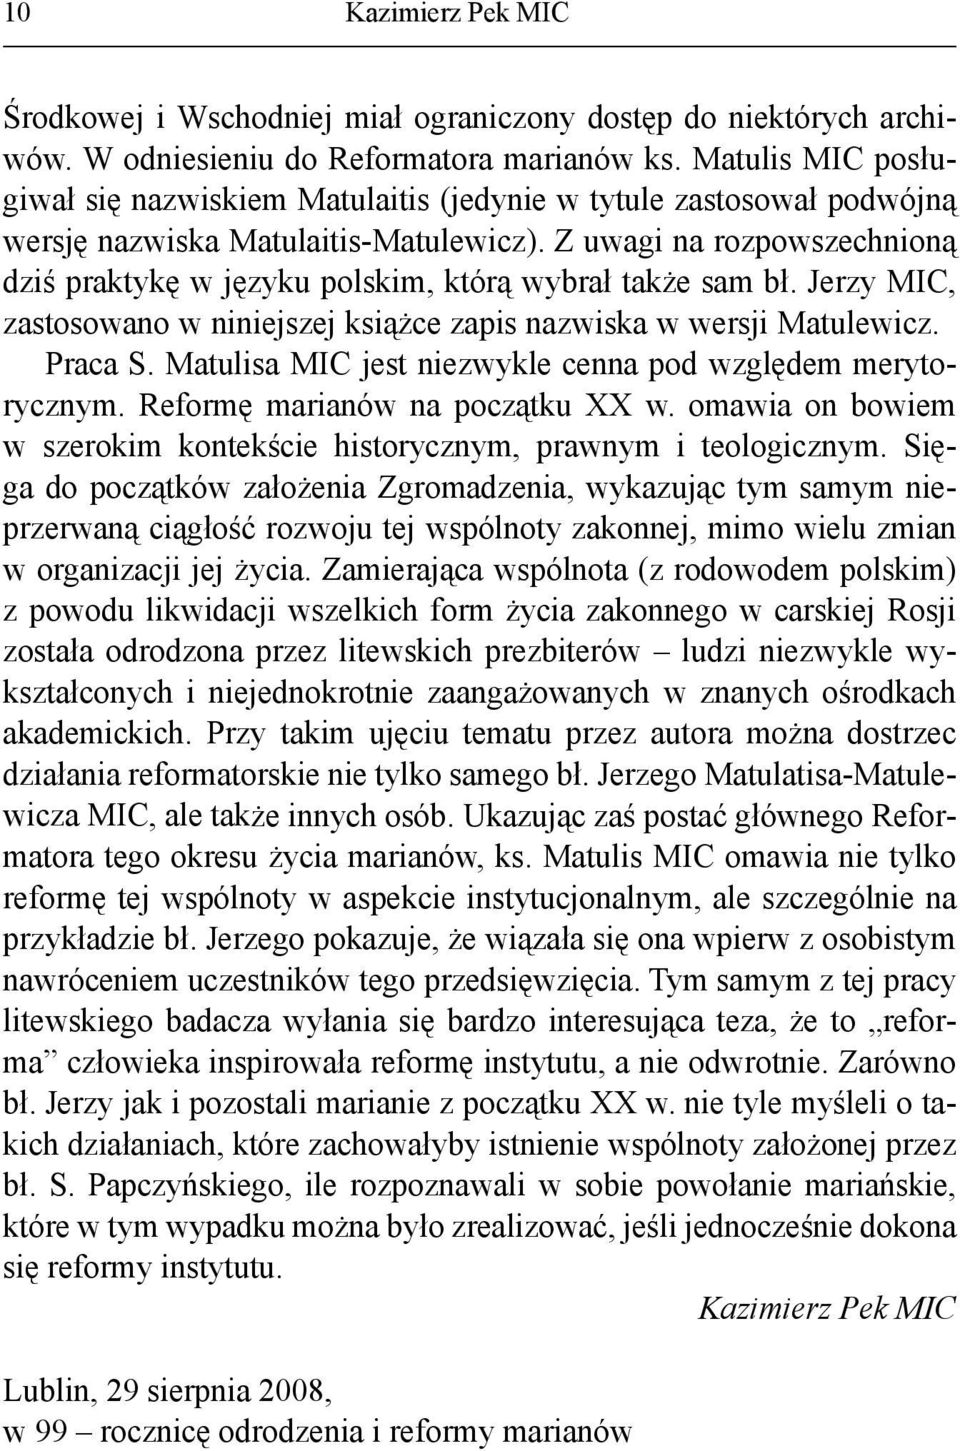 Z uwagi na rozpowszechnioną dziś praktykę w języku polskim, którą wybrał także sam bł. Jerzy MIC, zastosowano w niniejszej książce zapis nazwiska w wersji Matulewicz. Praca S.